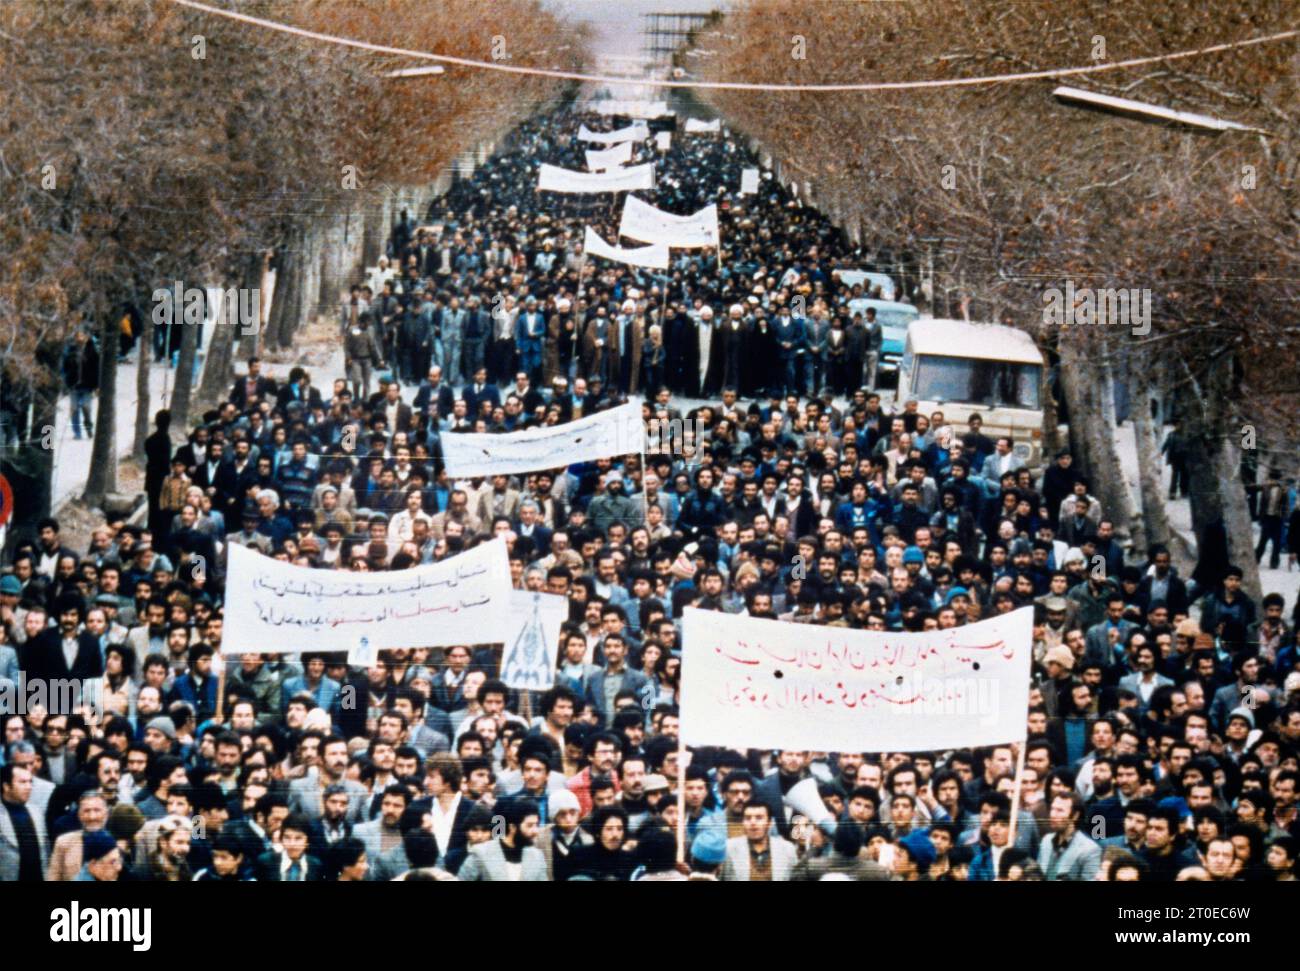 Révolution iranienne Jihad marche - la révolution iranienne (Enelab-e Eslami) qui a eu lieu 1978-79 a renversé le Shah d'Iran Banque D'Images